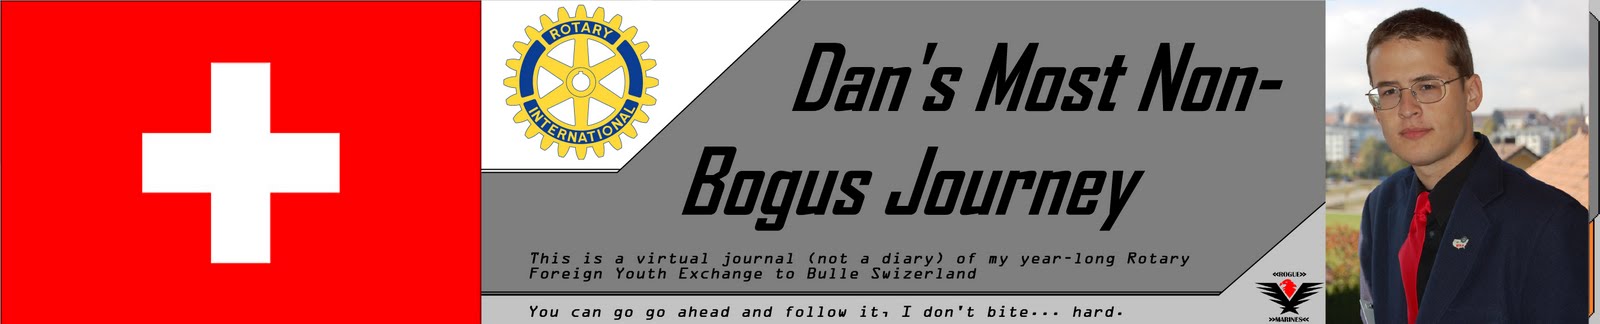 Daniel's Most Non-Bogus Journey